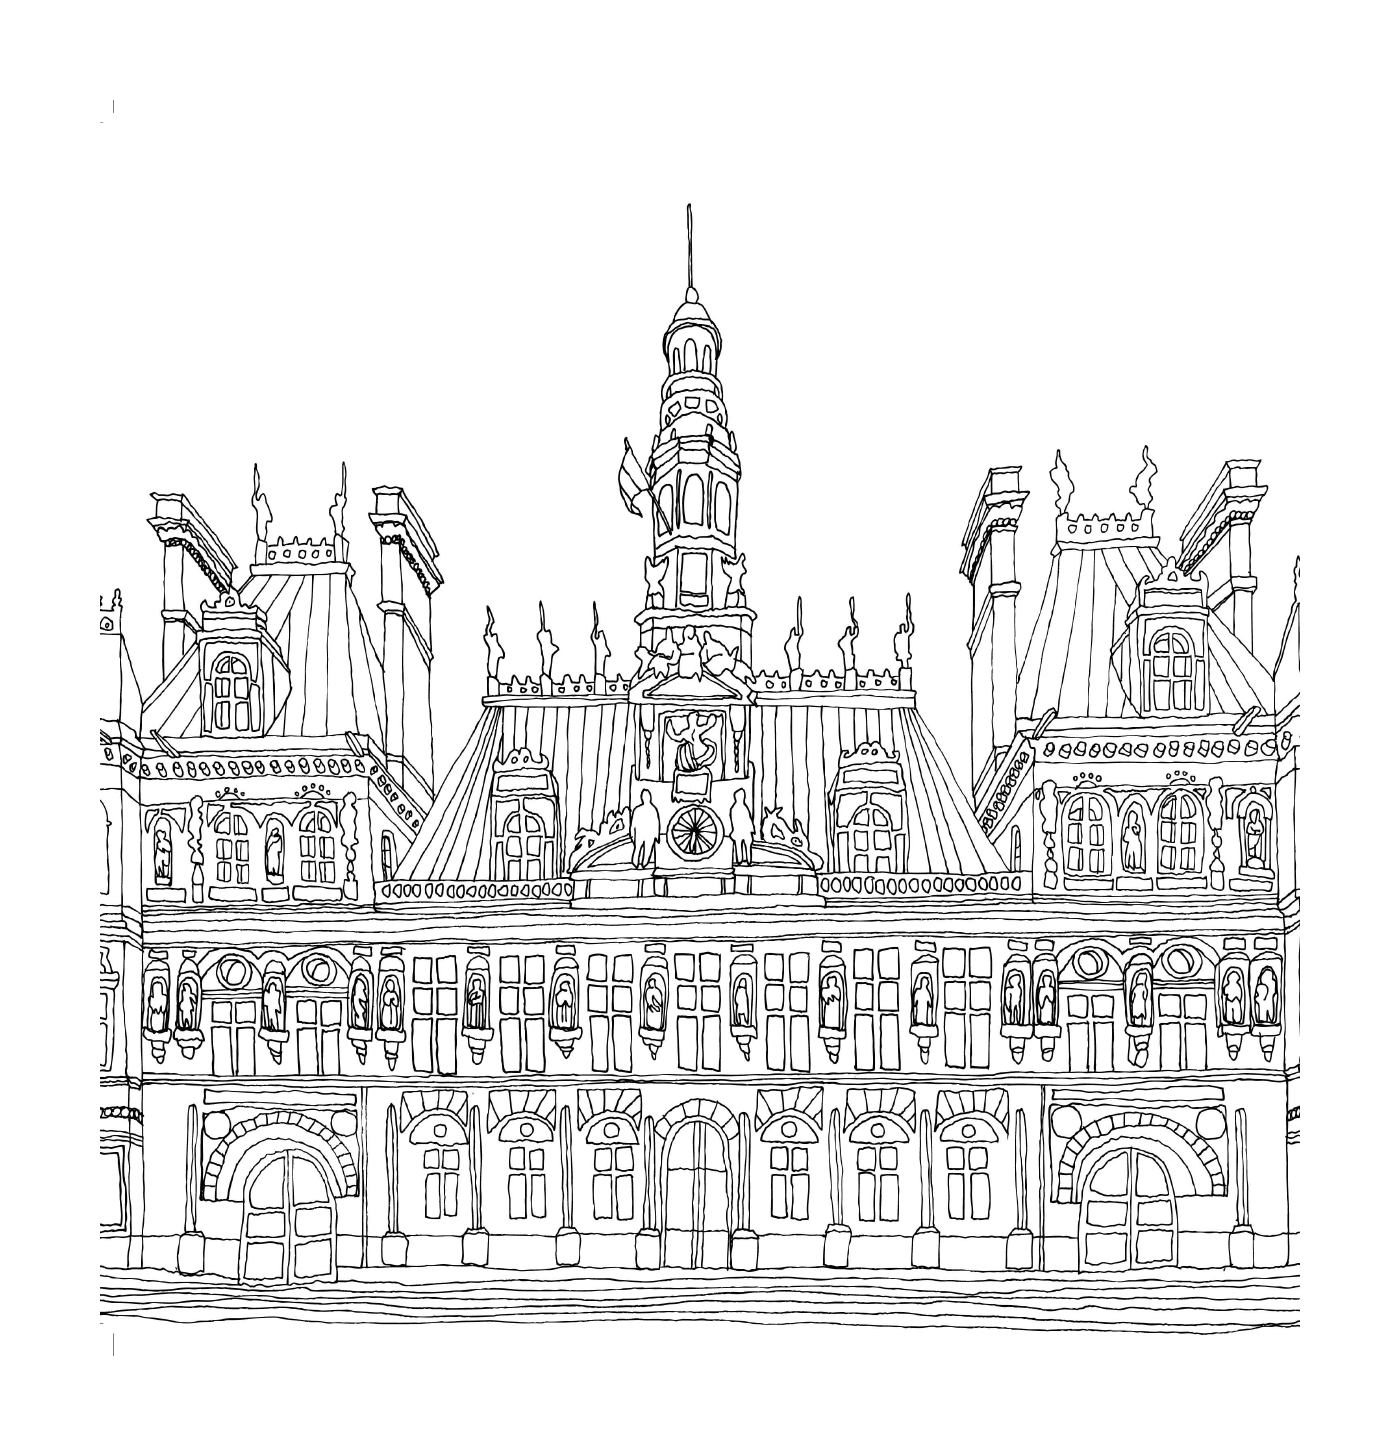  巴黎法院 